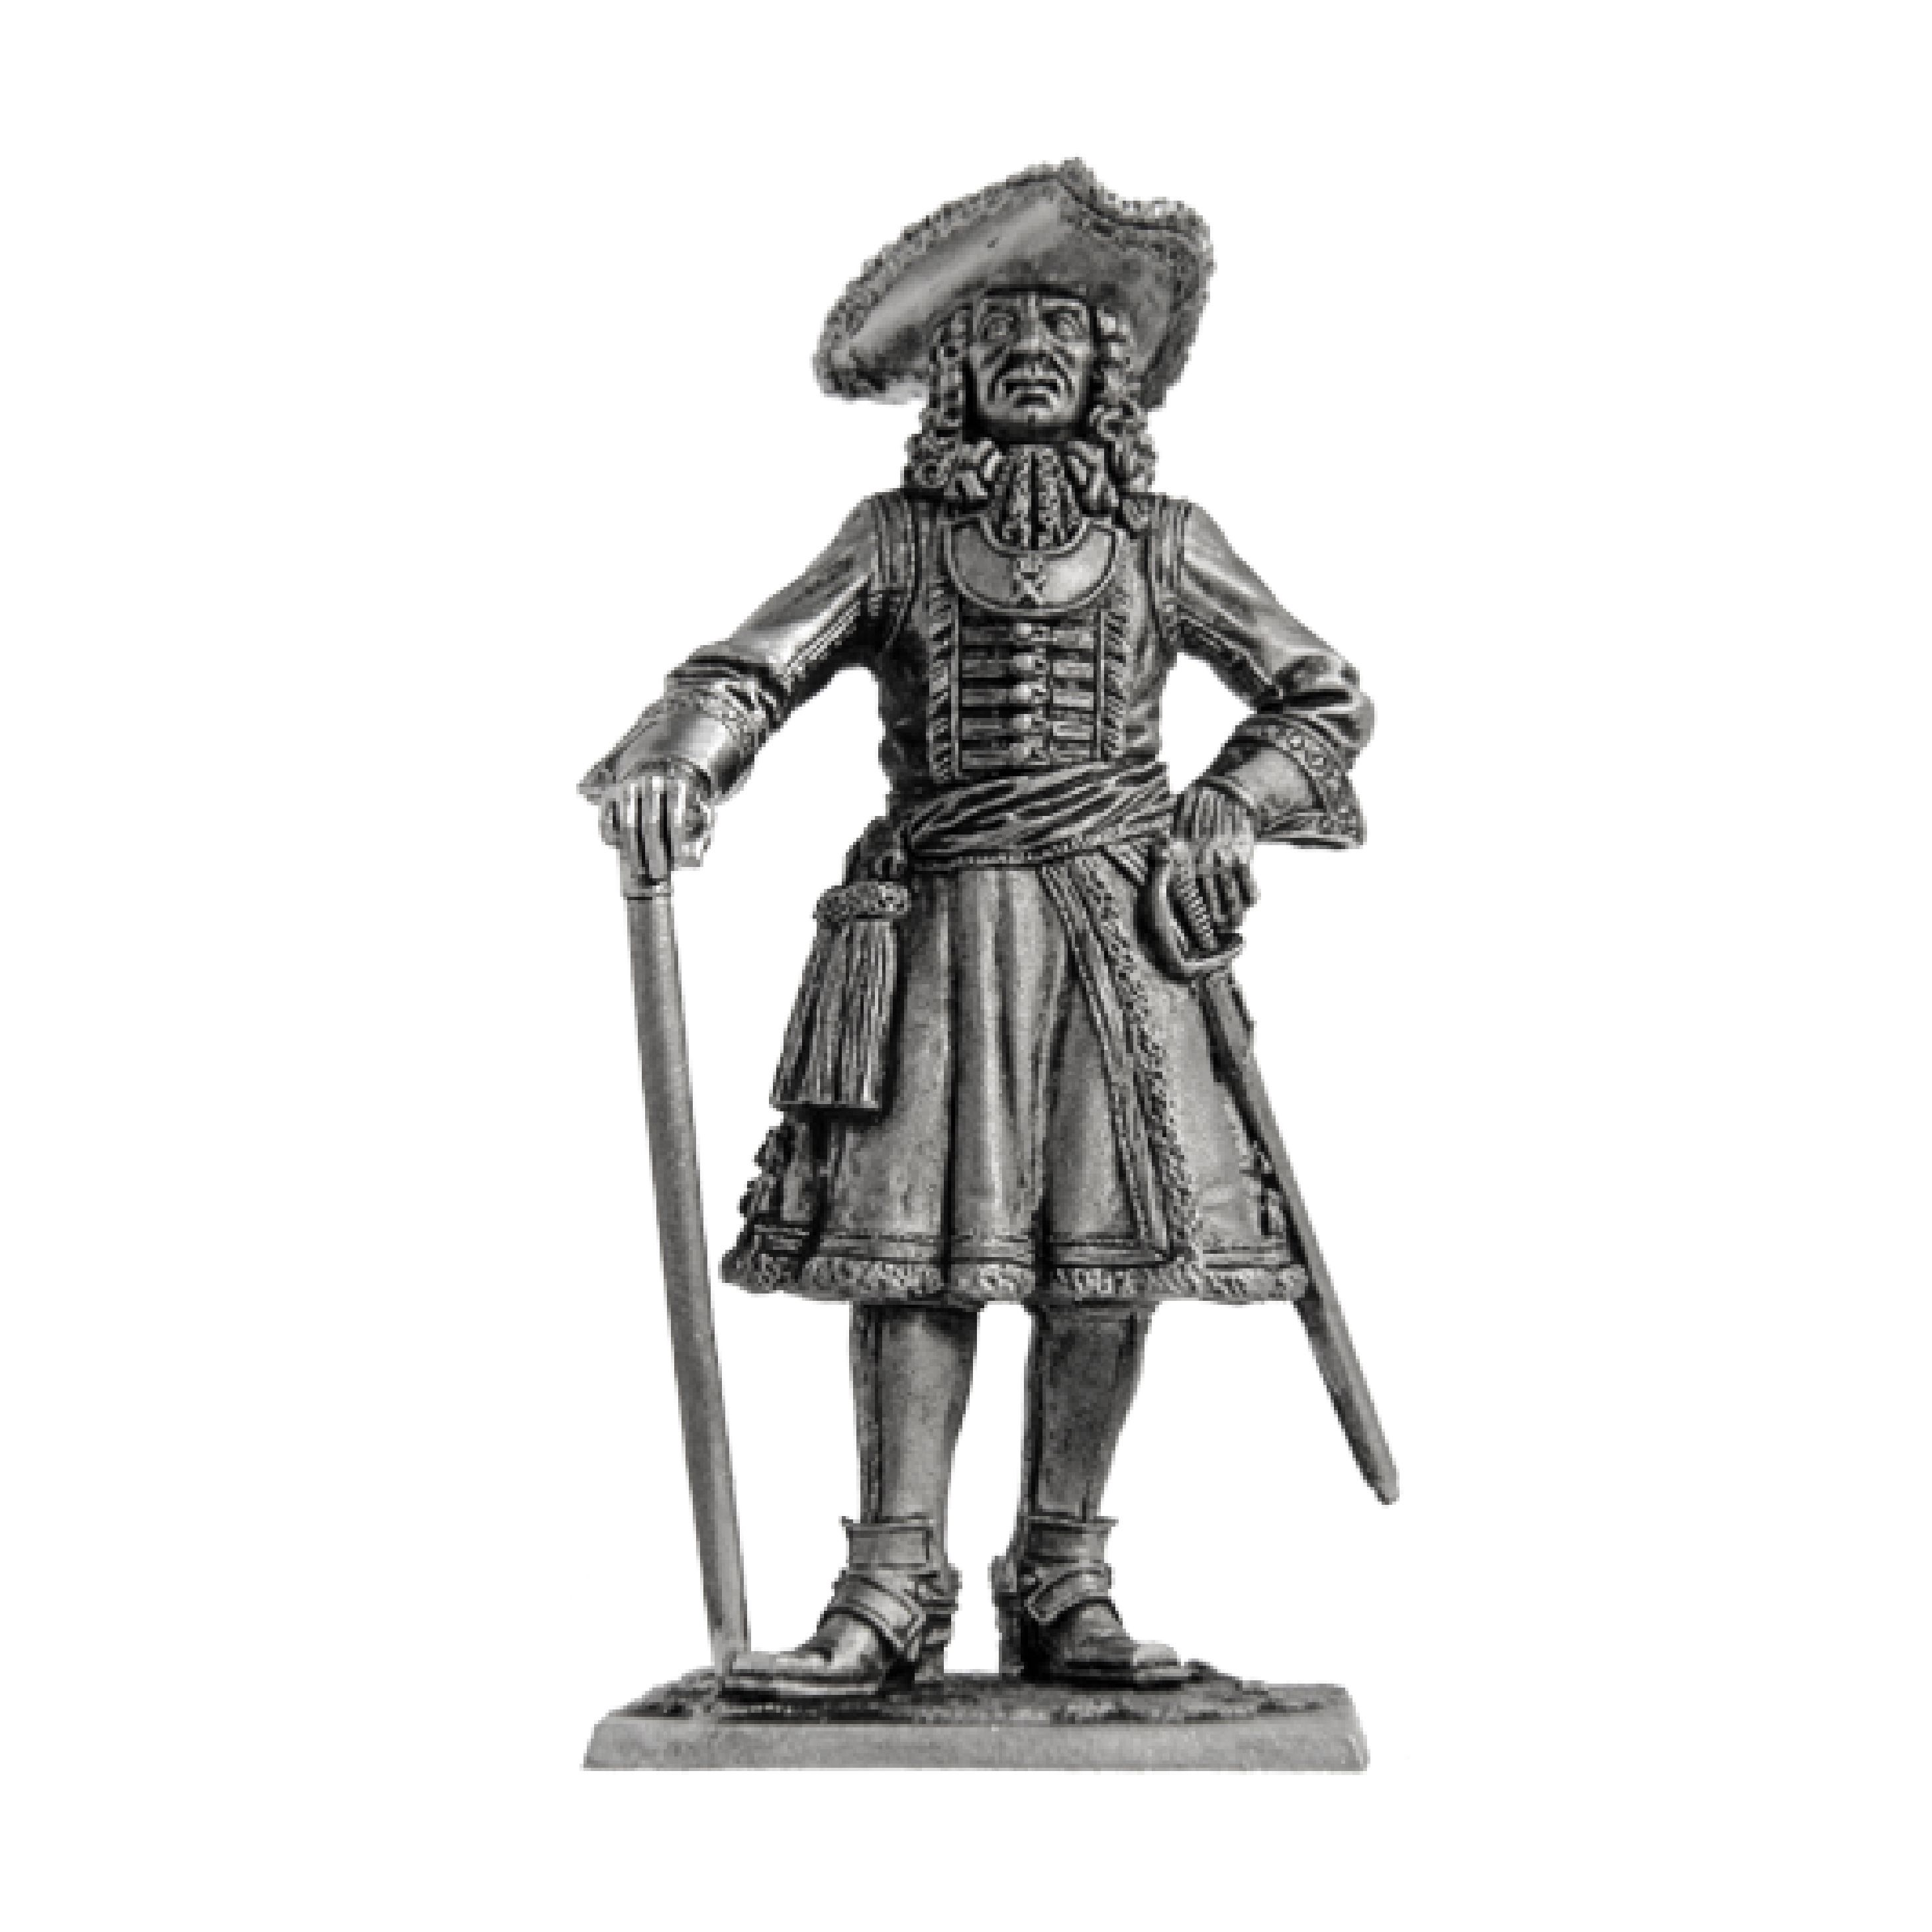 Preobrazhensky alayının karargah subayı, 1698-1700 Rusya